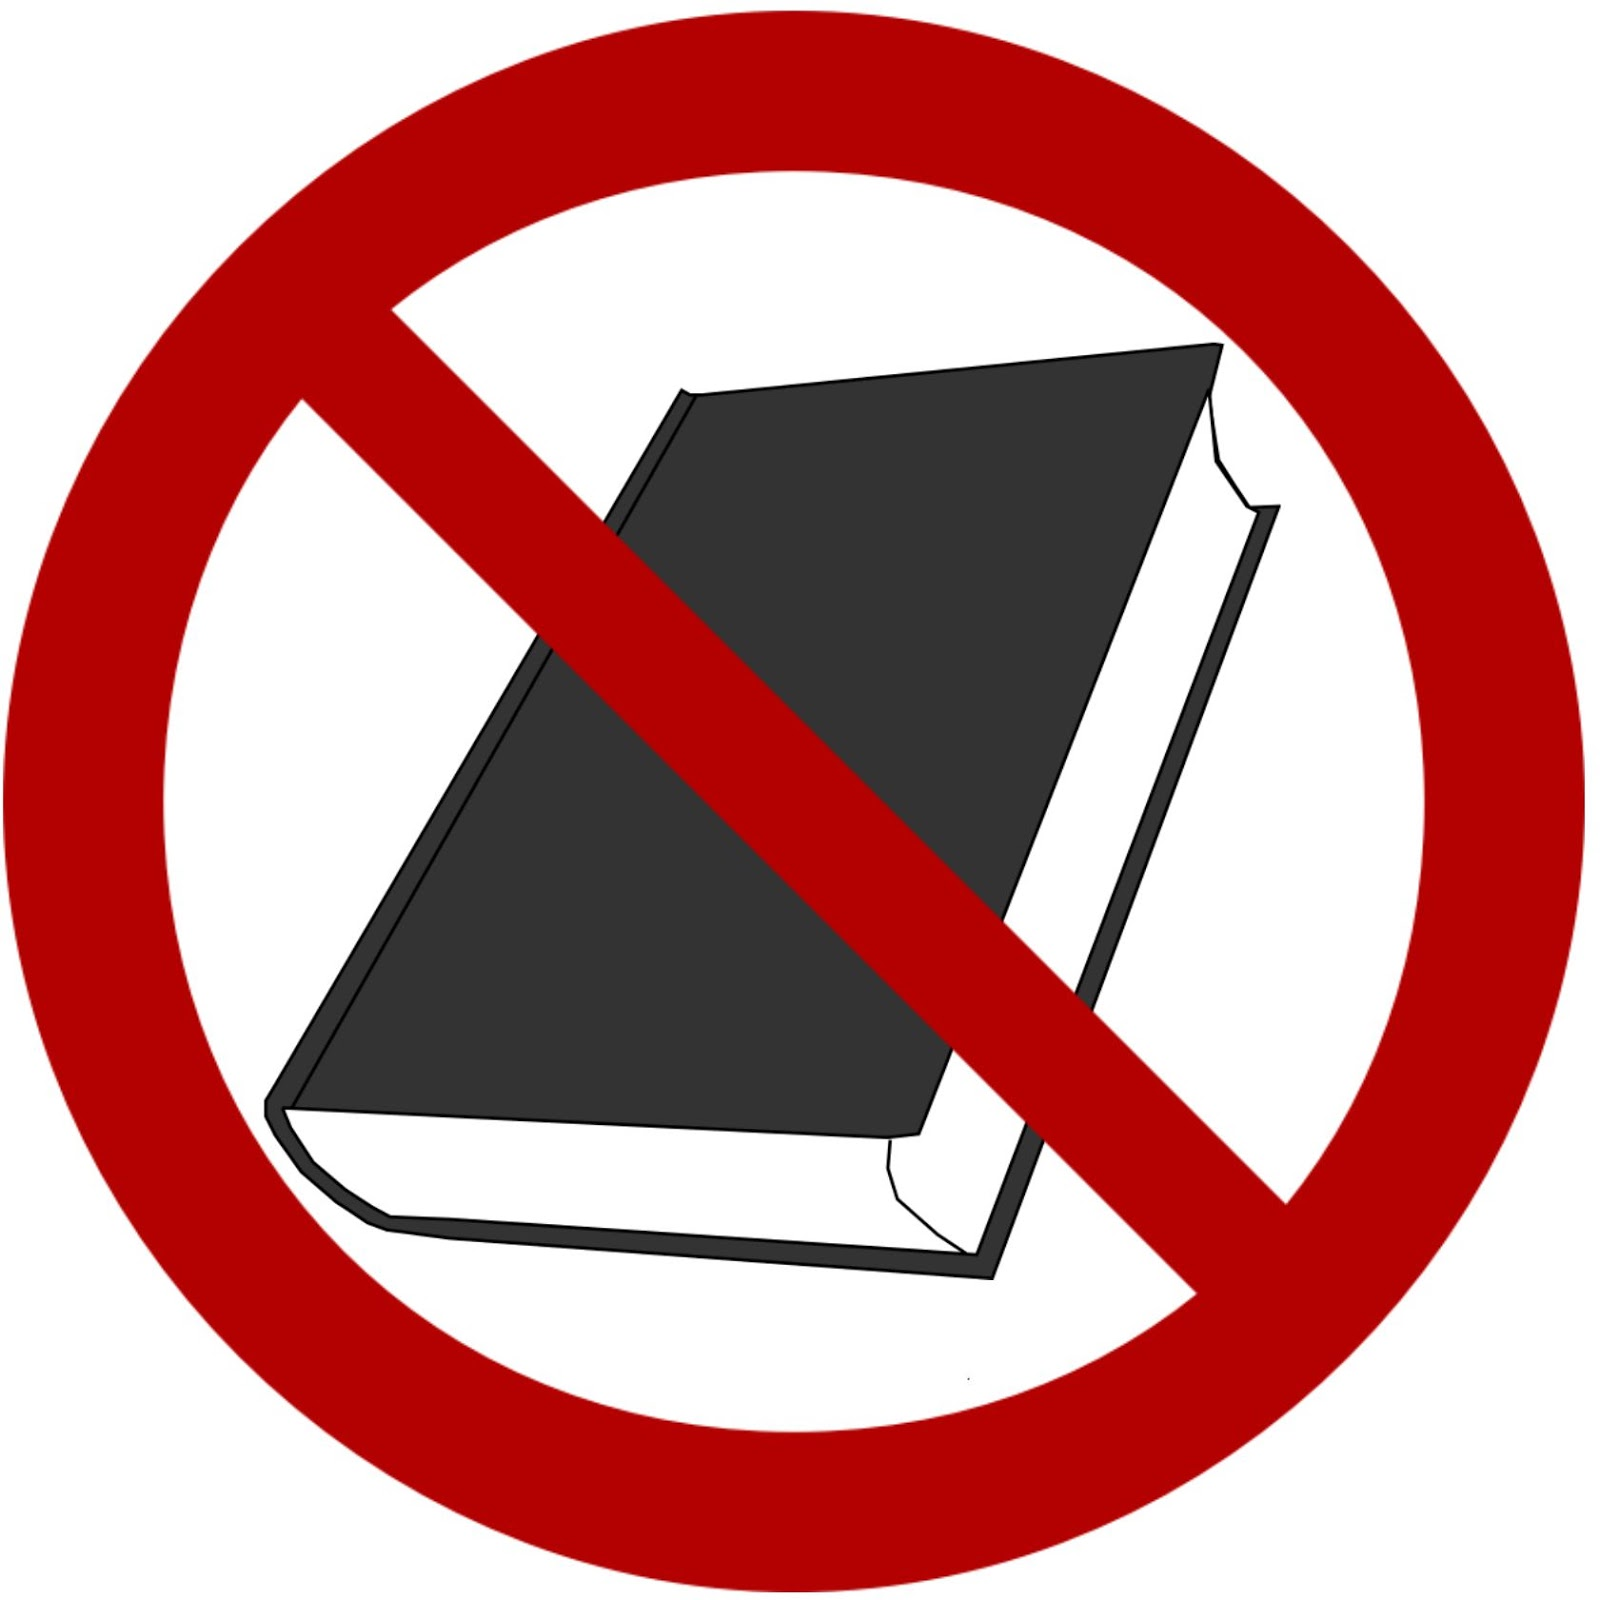 Книга без запрета. Перечеркнутая книга. Знак перечеркнутая книга. Запрещенные книги. Запрет книг.